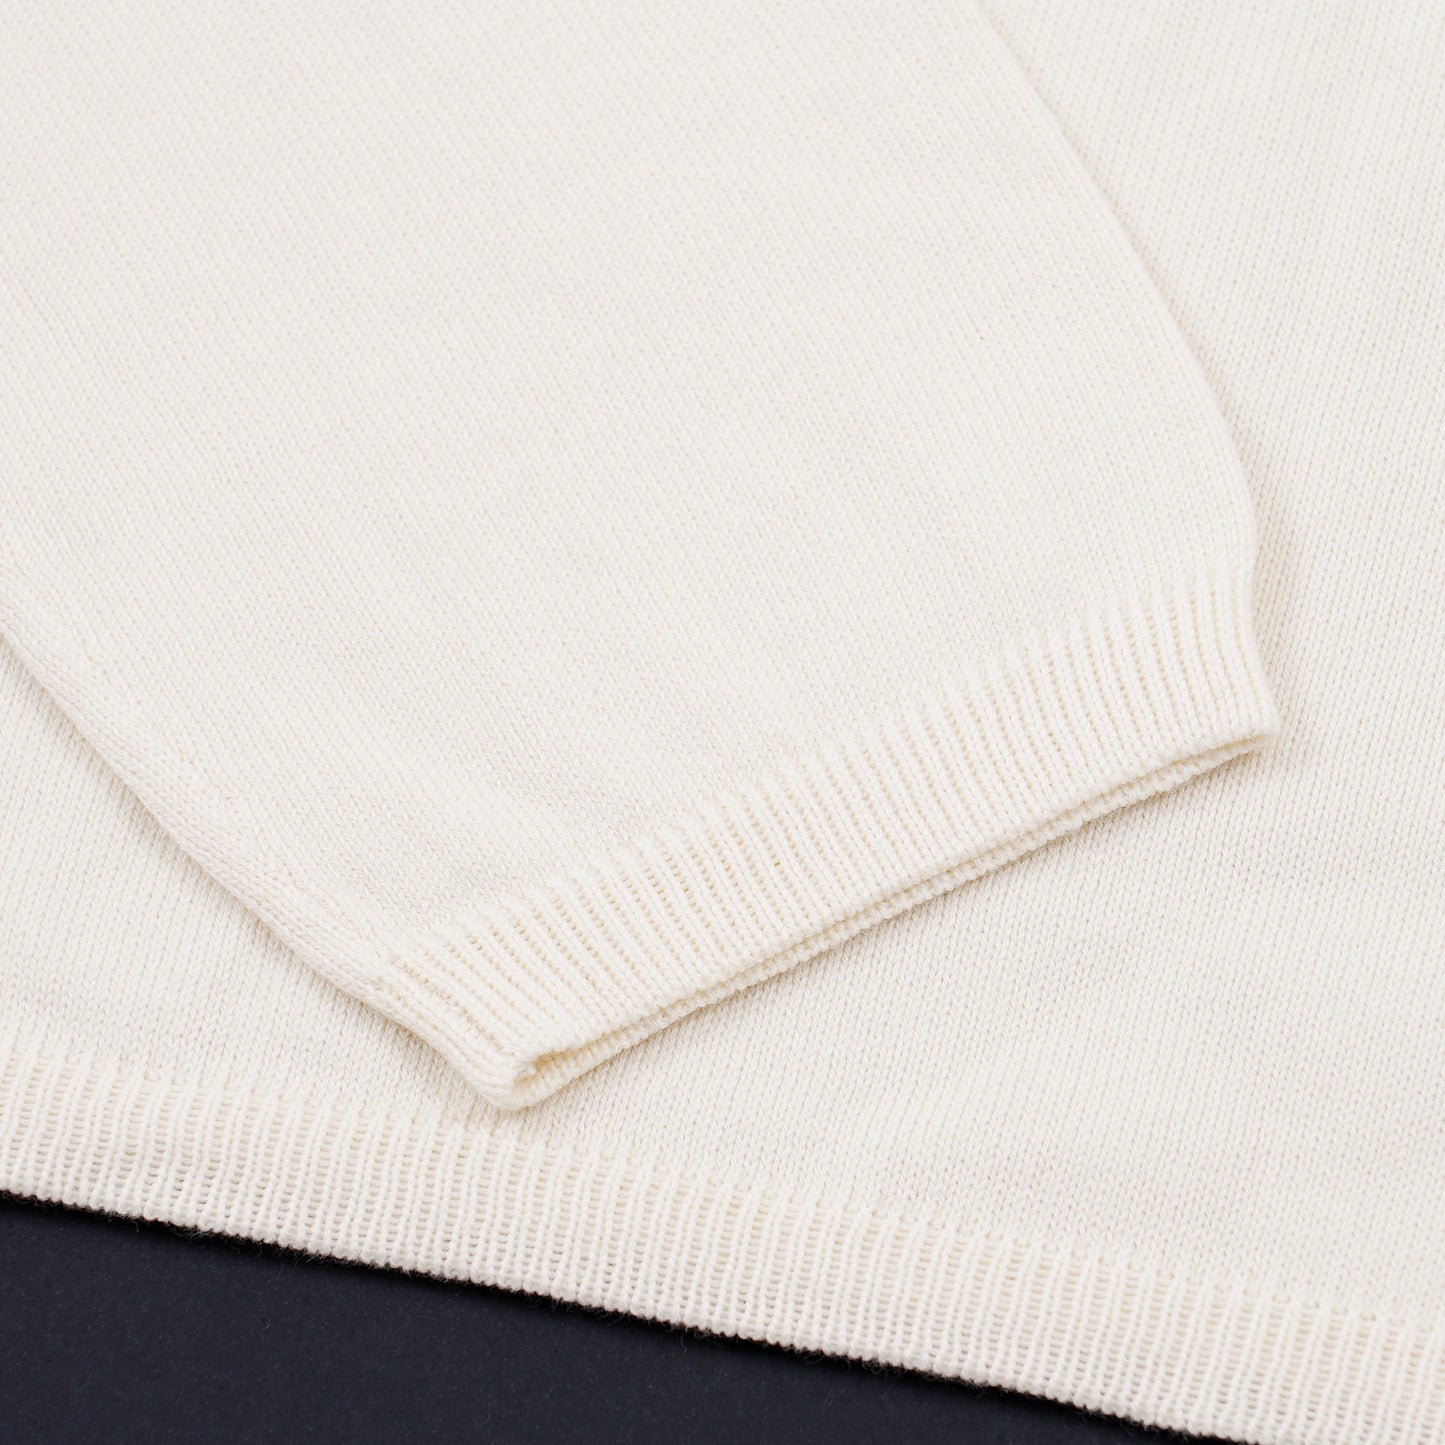 Cruciani Extrafine Cotton Sweater - Top Shelf Apparel